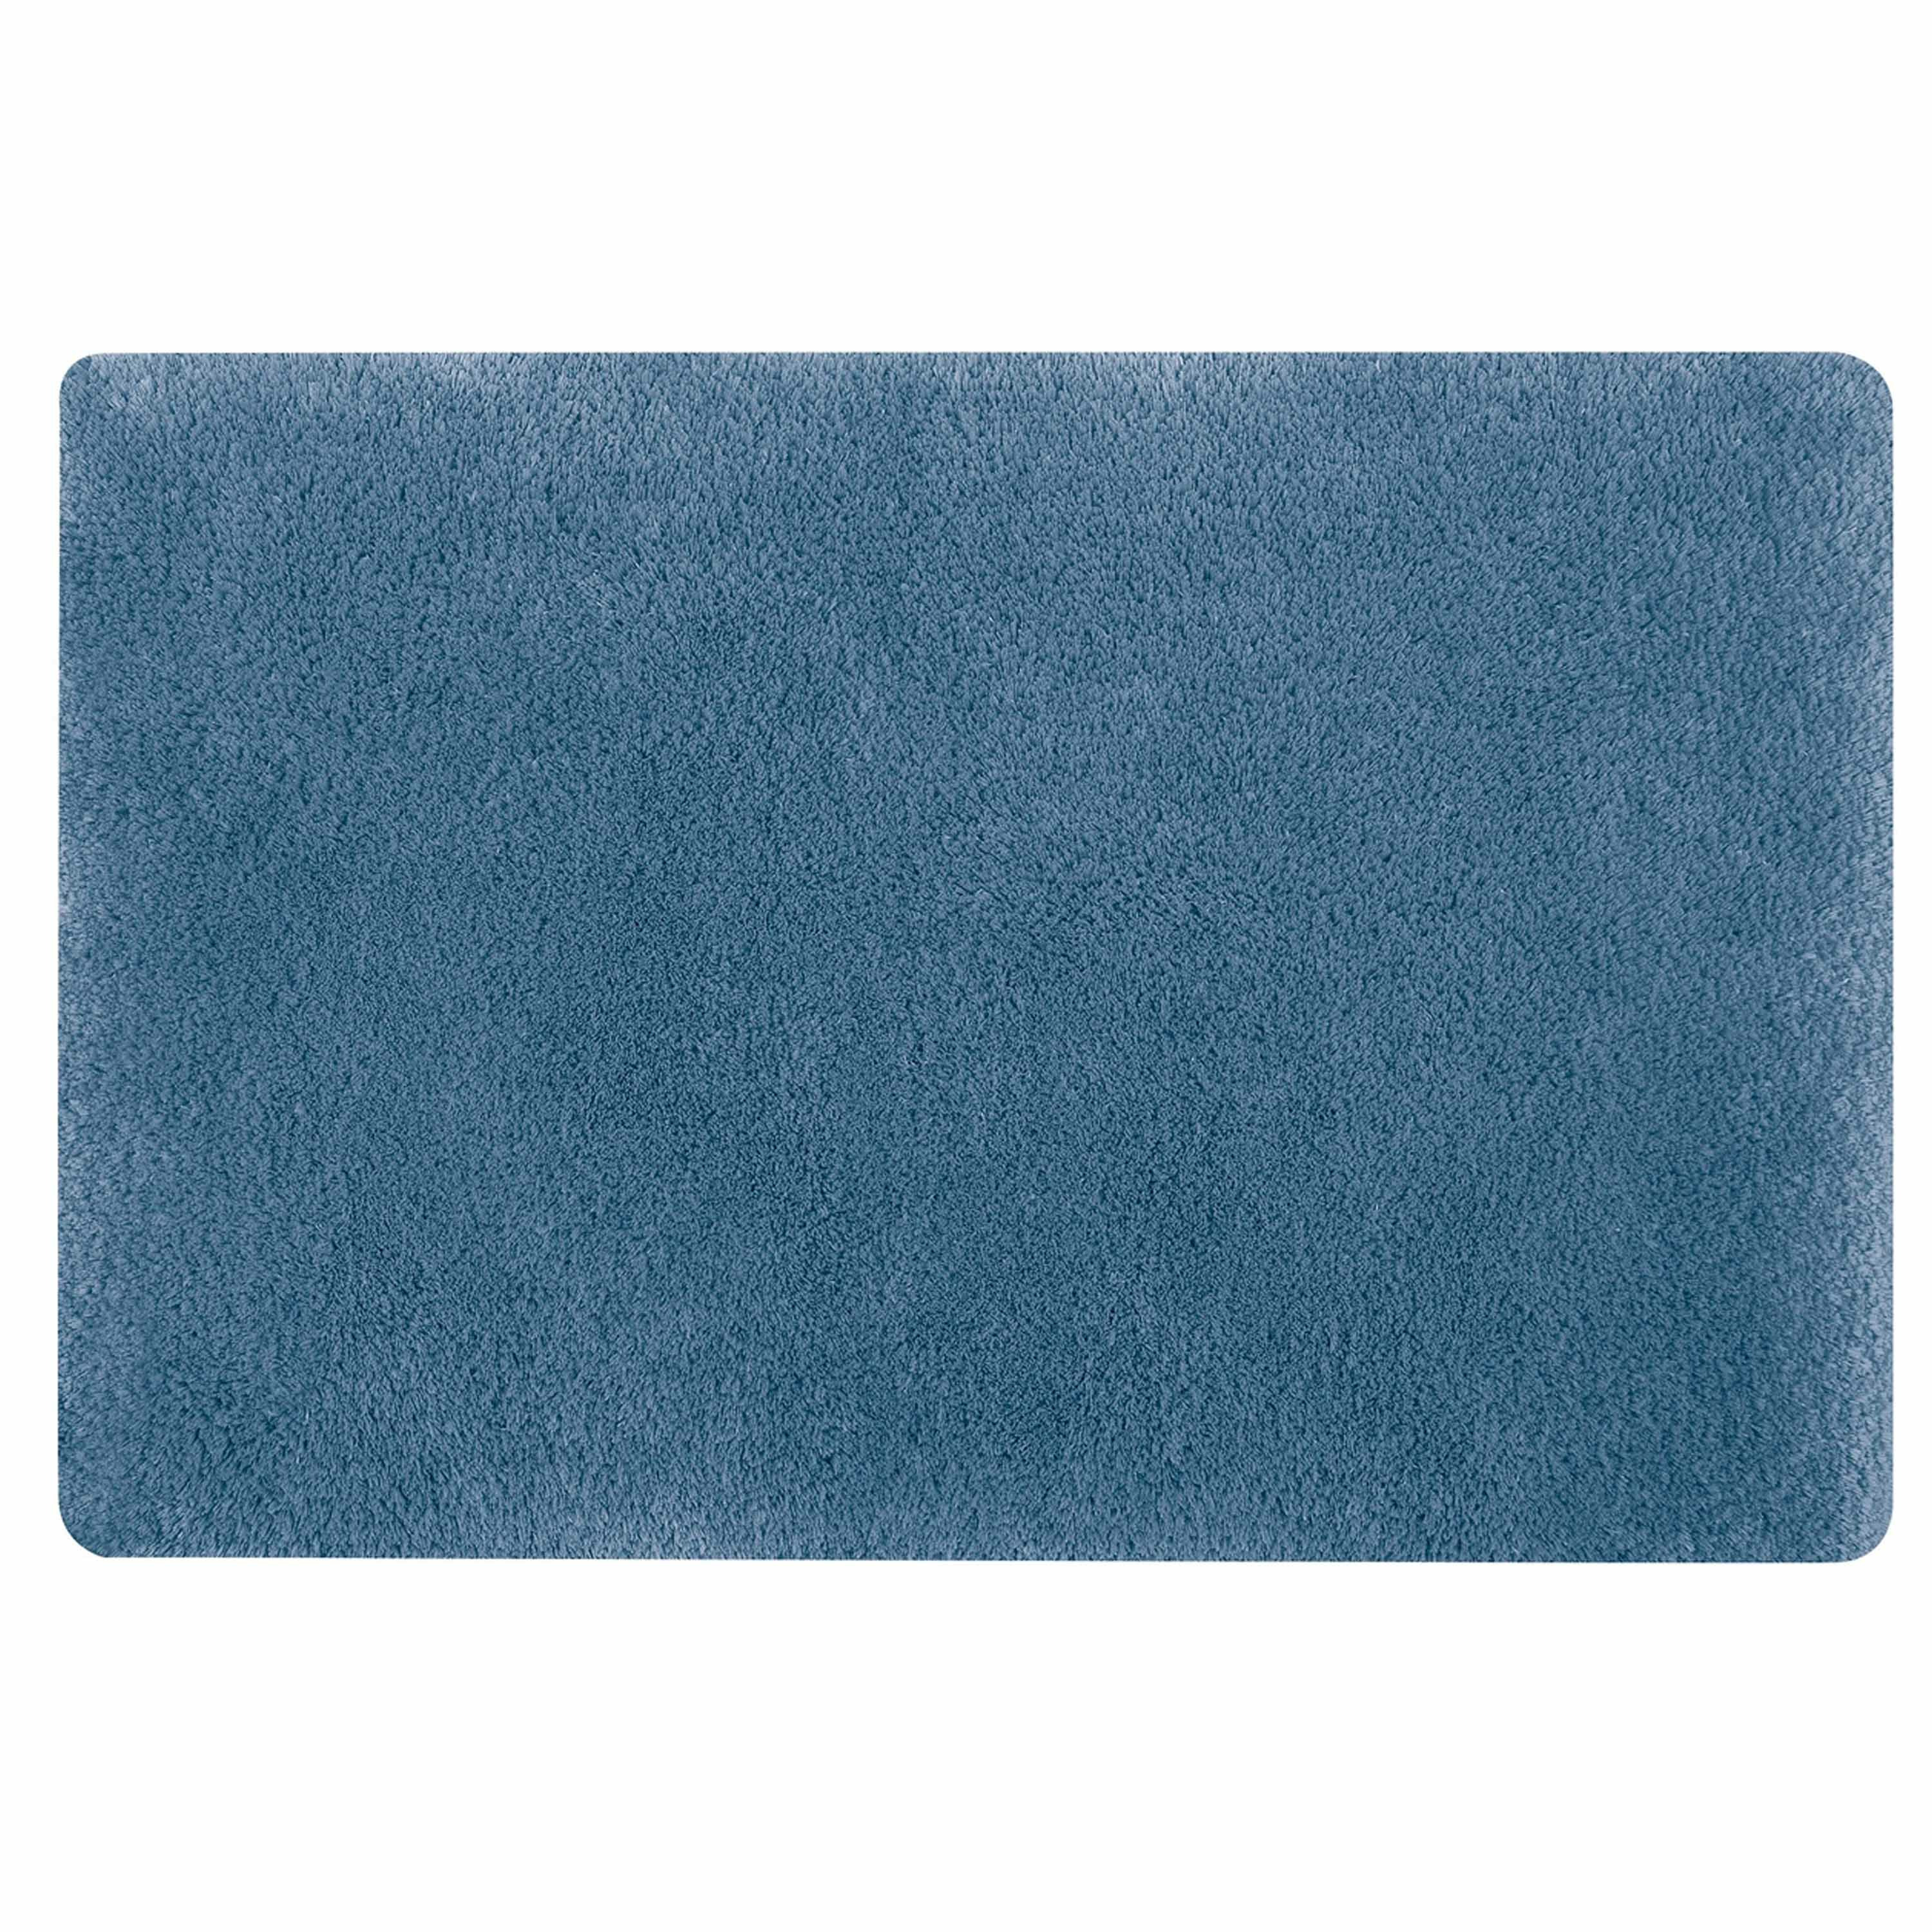 Spirella badkamer vloer kleedje-badmat tapijt hoogpolig en luxe uitvoering blauw 40 x 60 cm Microfib